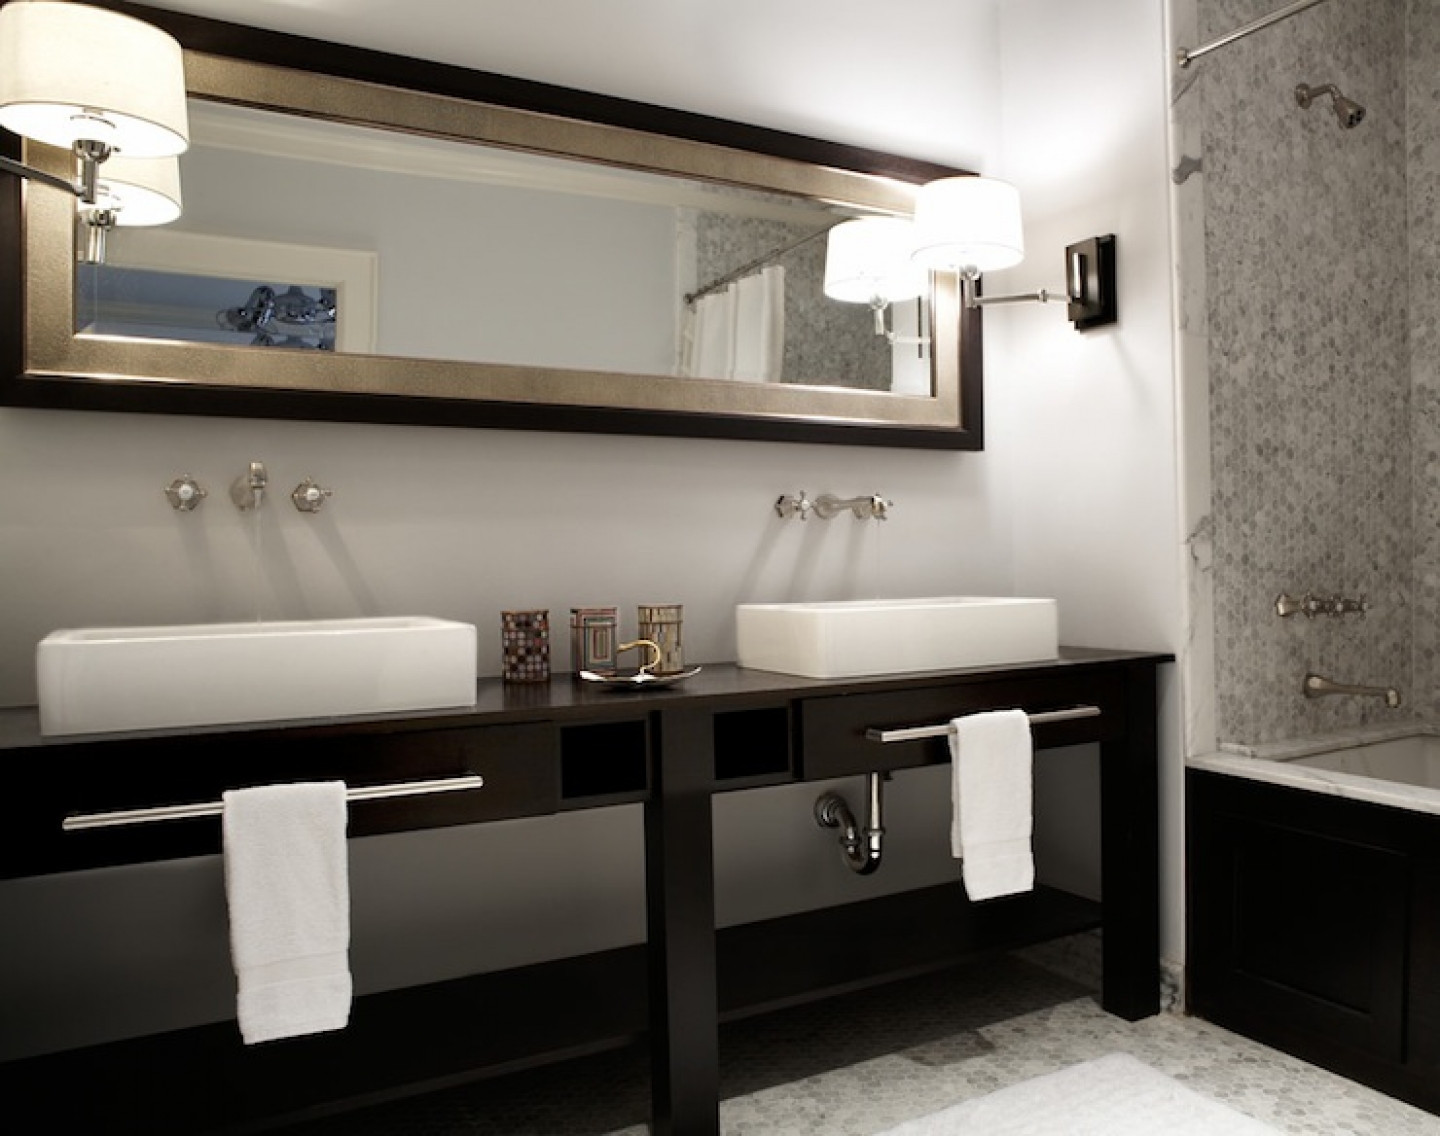 Small Double Bathroom Vanities
 15 Must See Double Sink Bathroom Vanities in 2014 Qnud